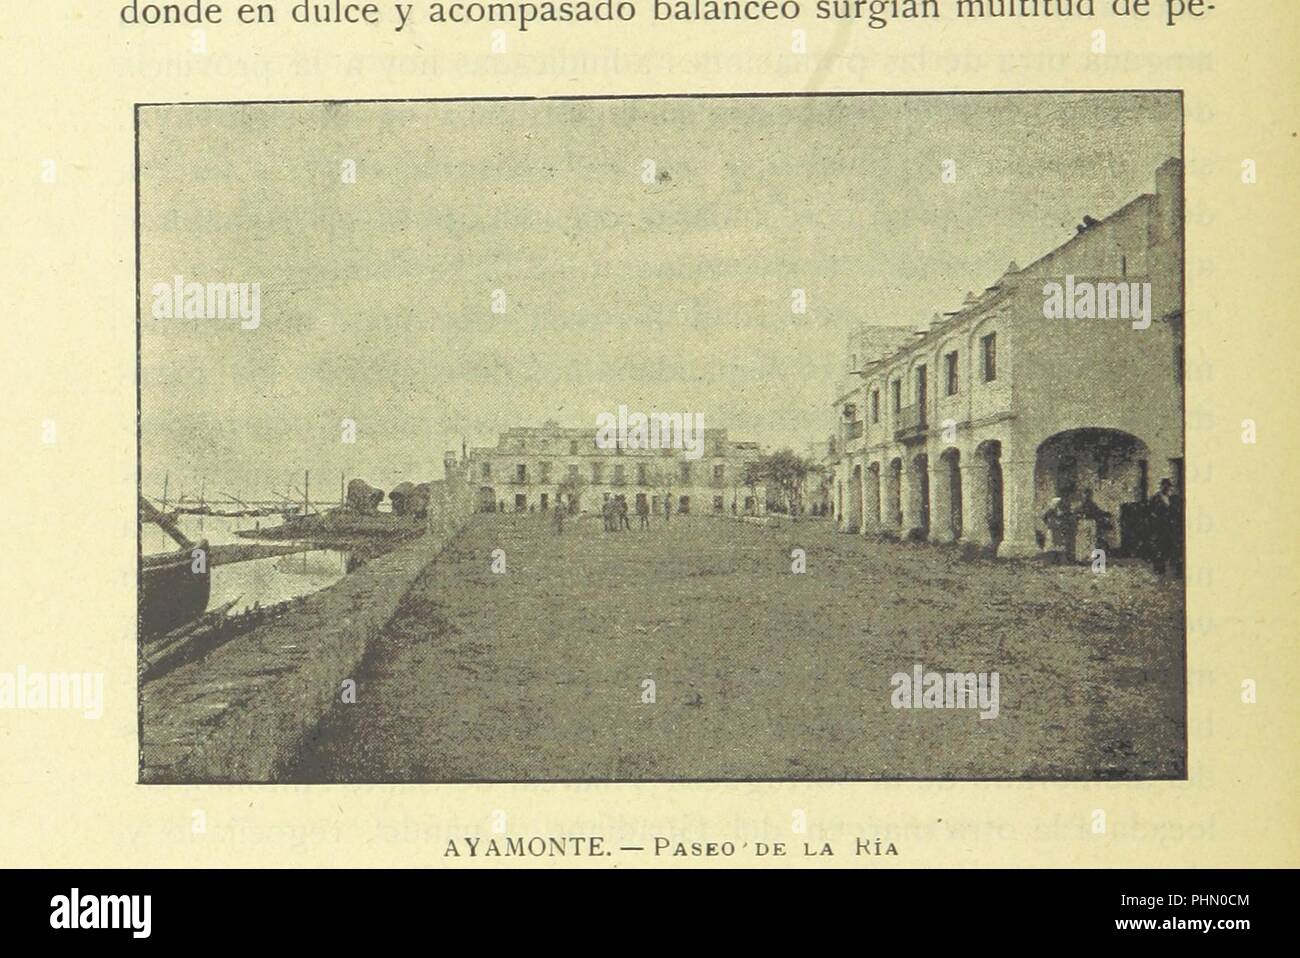 Immagine dalla pagina 656 di " Huelva ... Fotograbados heliografías y de Joarizti y Mariezcurrena, dibujos y cromos de Isidro Gil' . Foto Stock